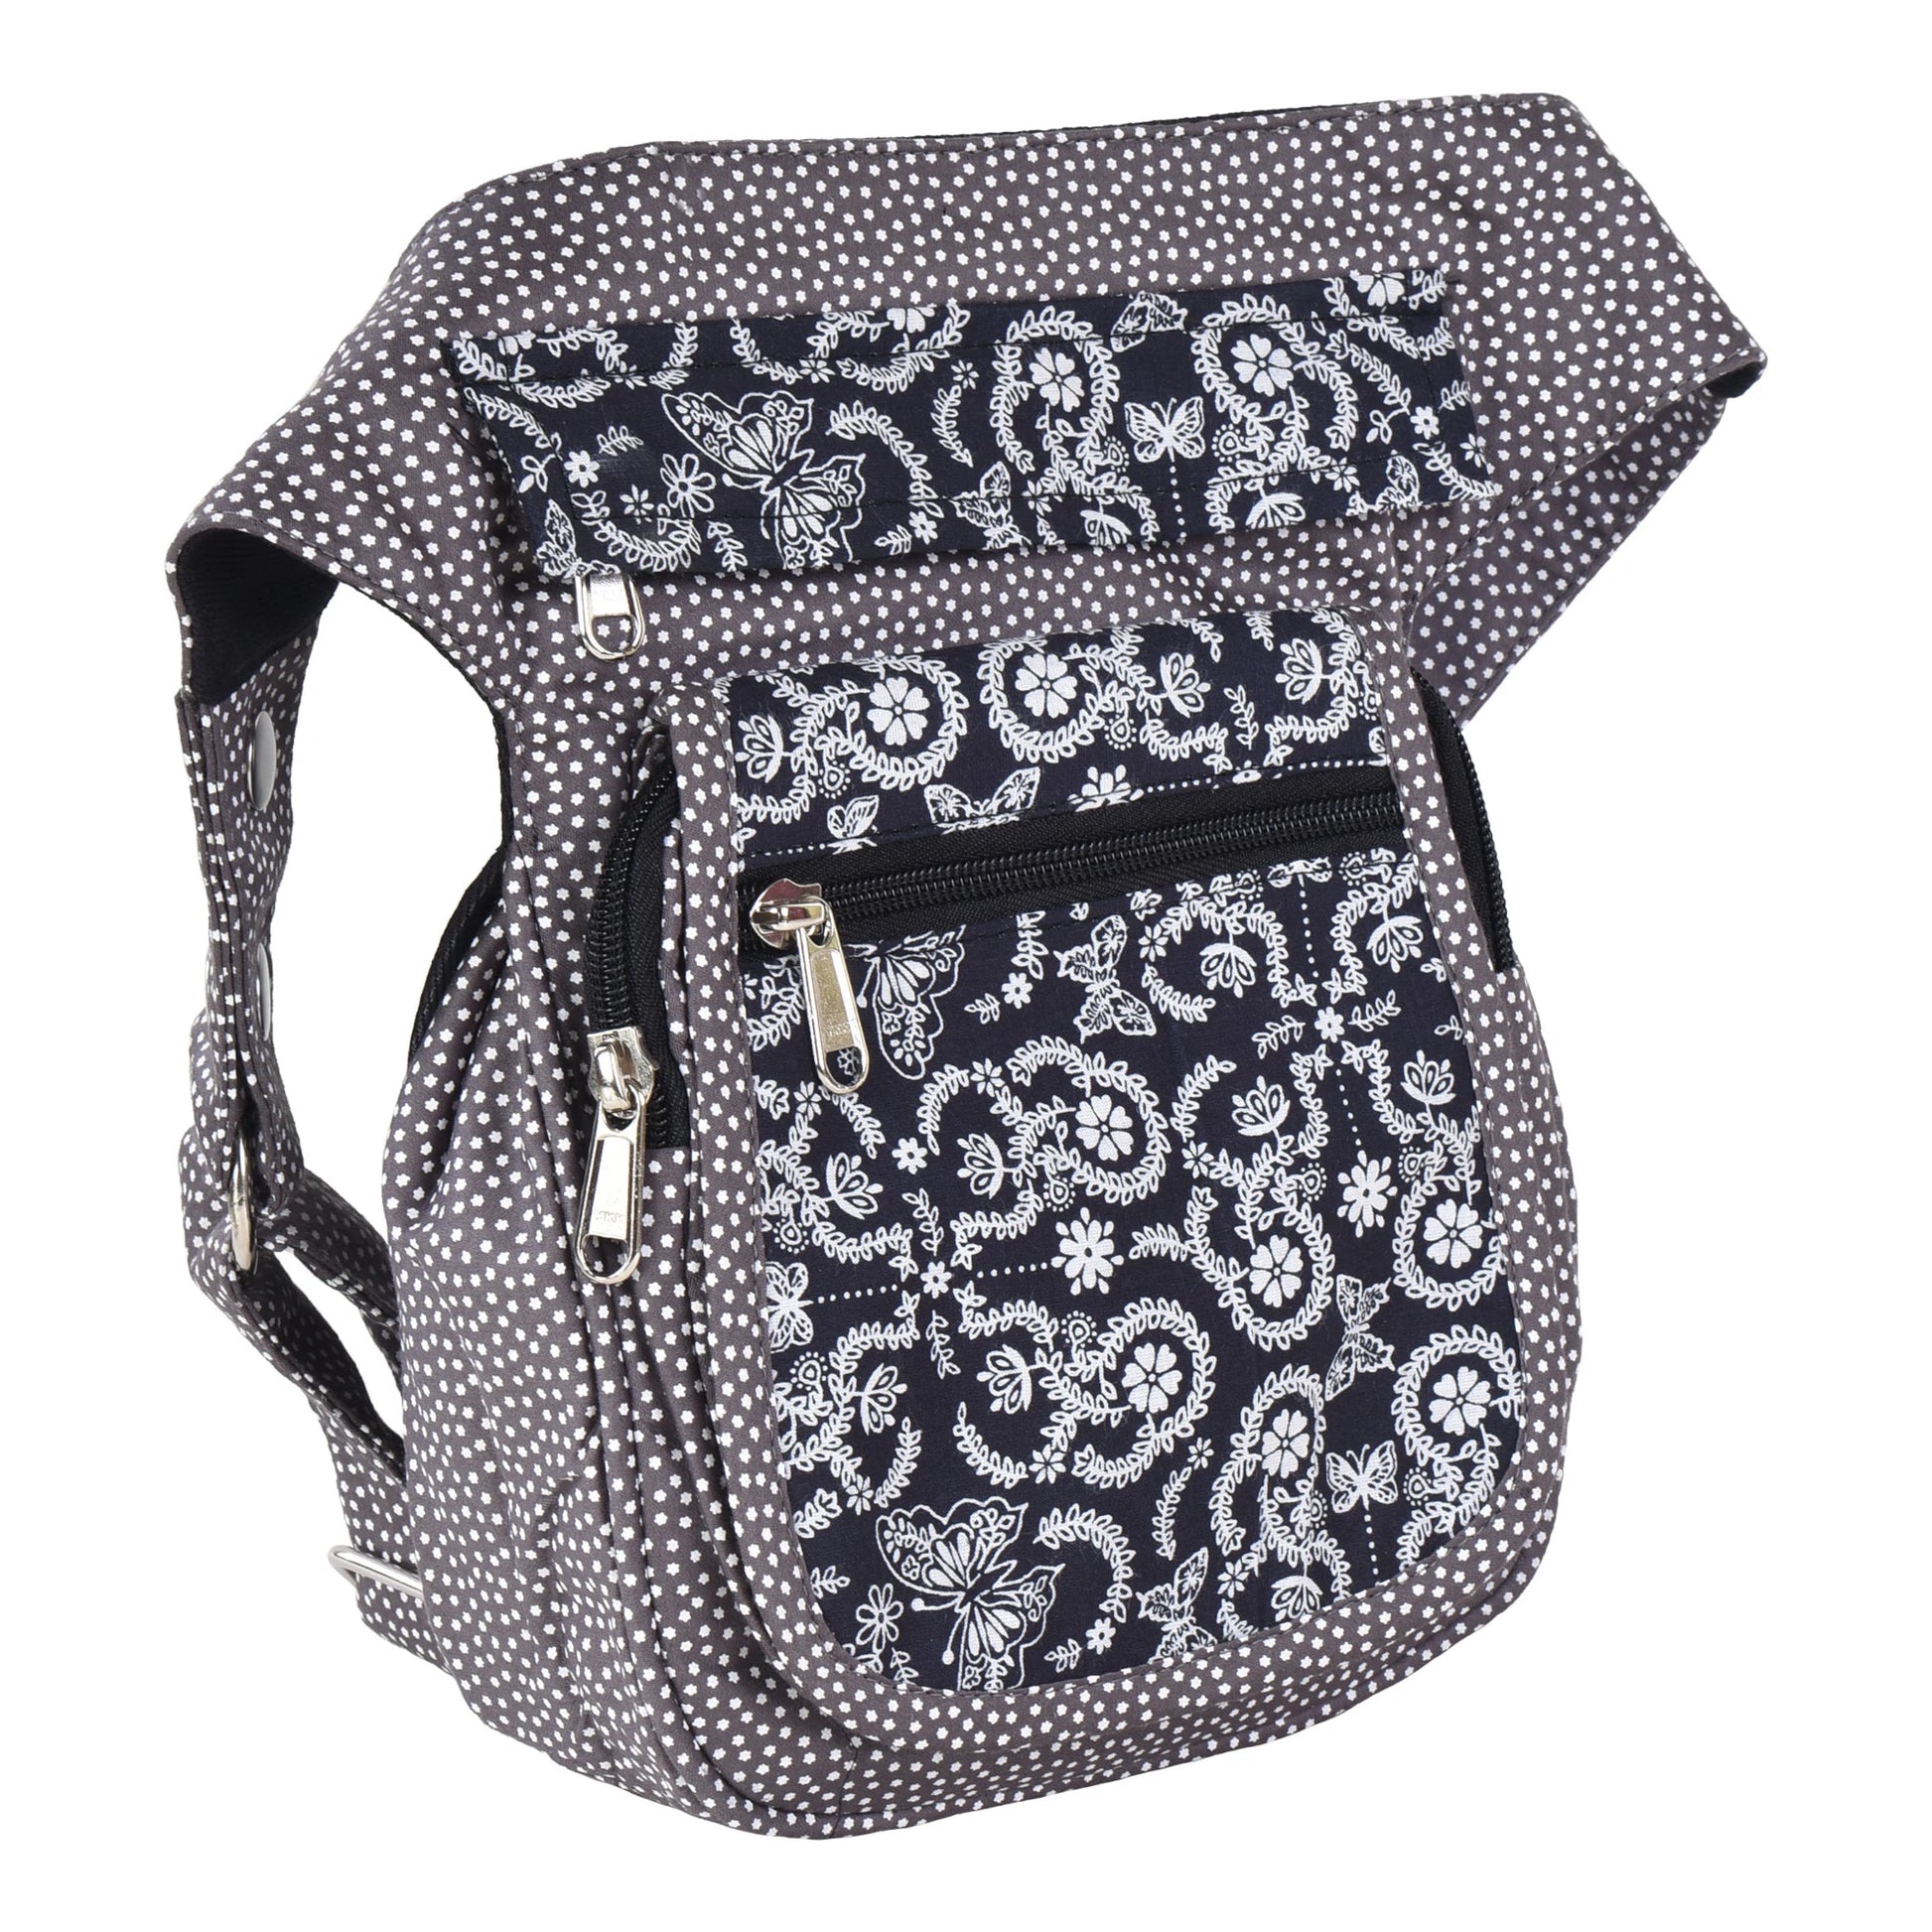 Bauchtasche Hippie Tasche Paisley Grau mit Schmetterling-Motive